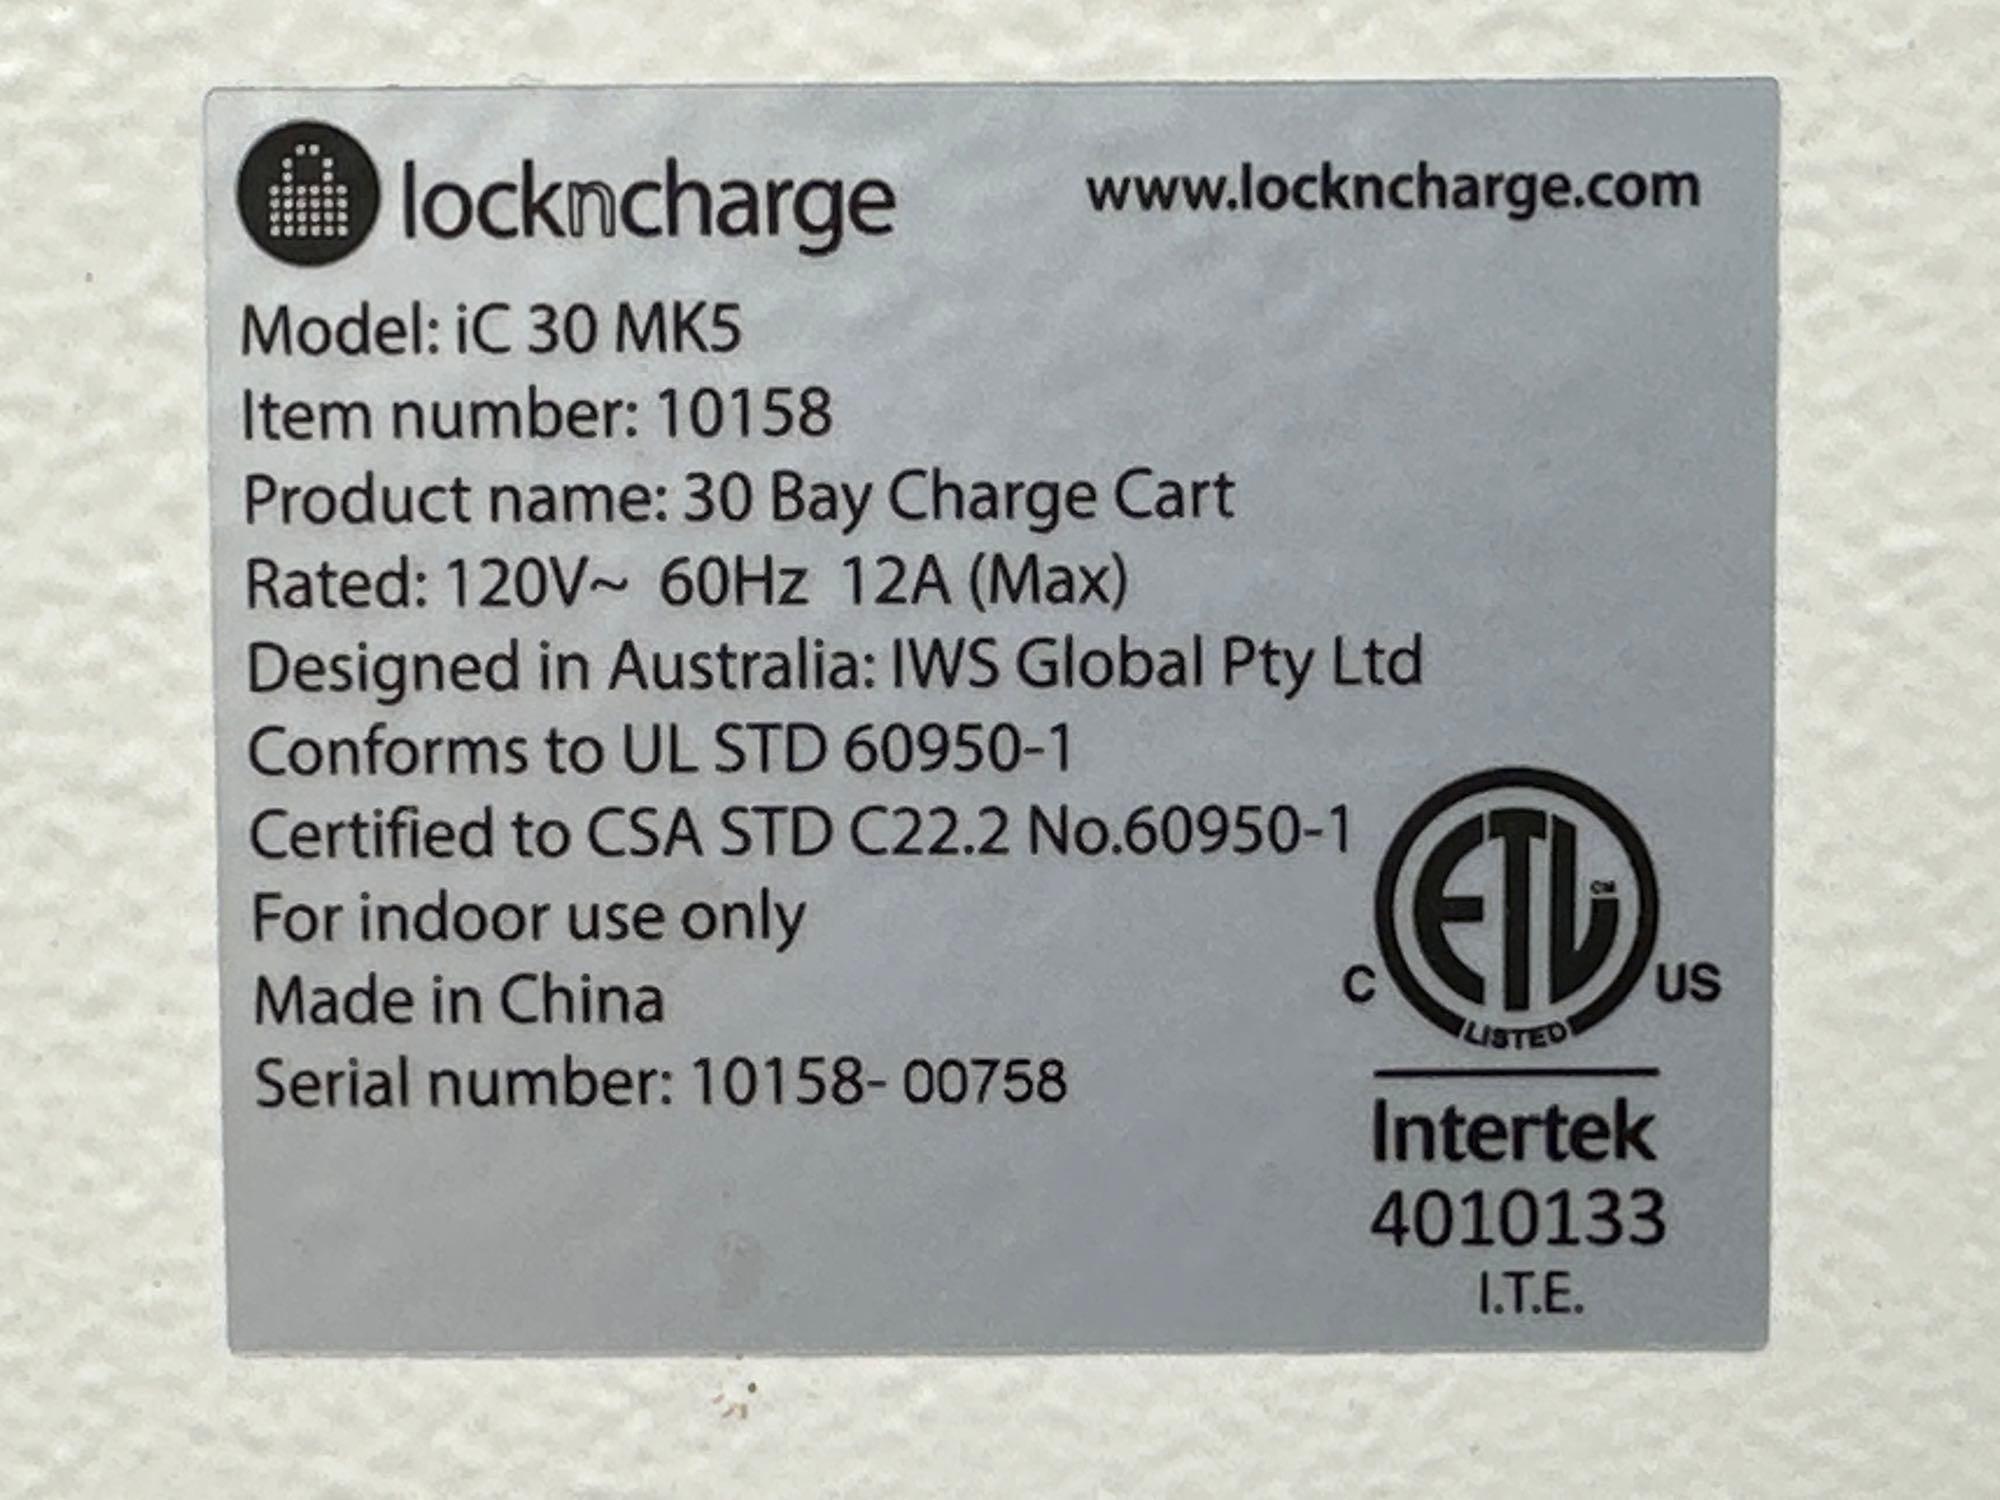 LocknCharge iC 30 MK5 30 Bay Charge Cart